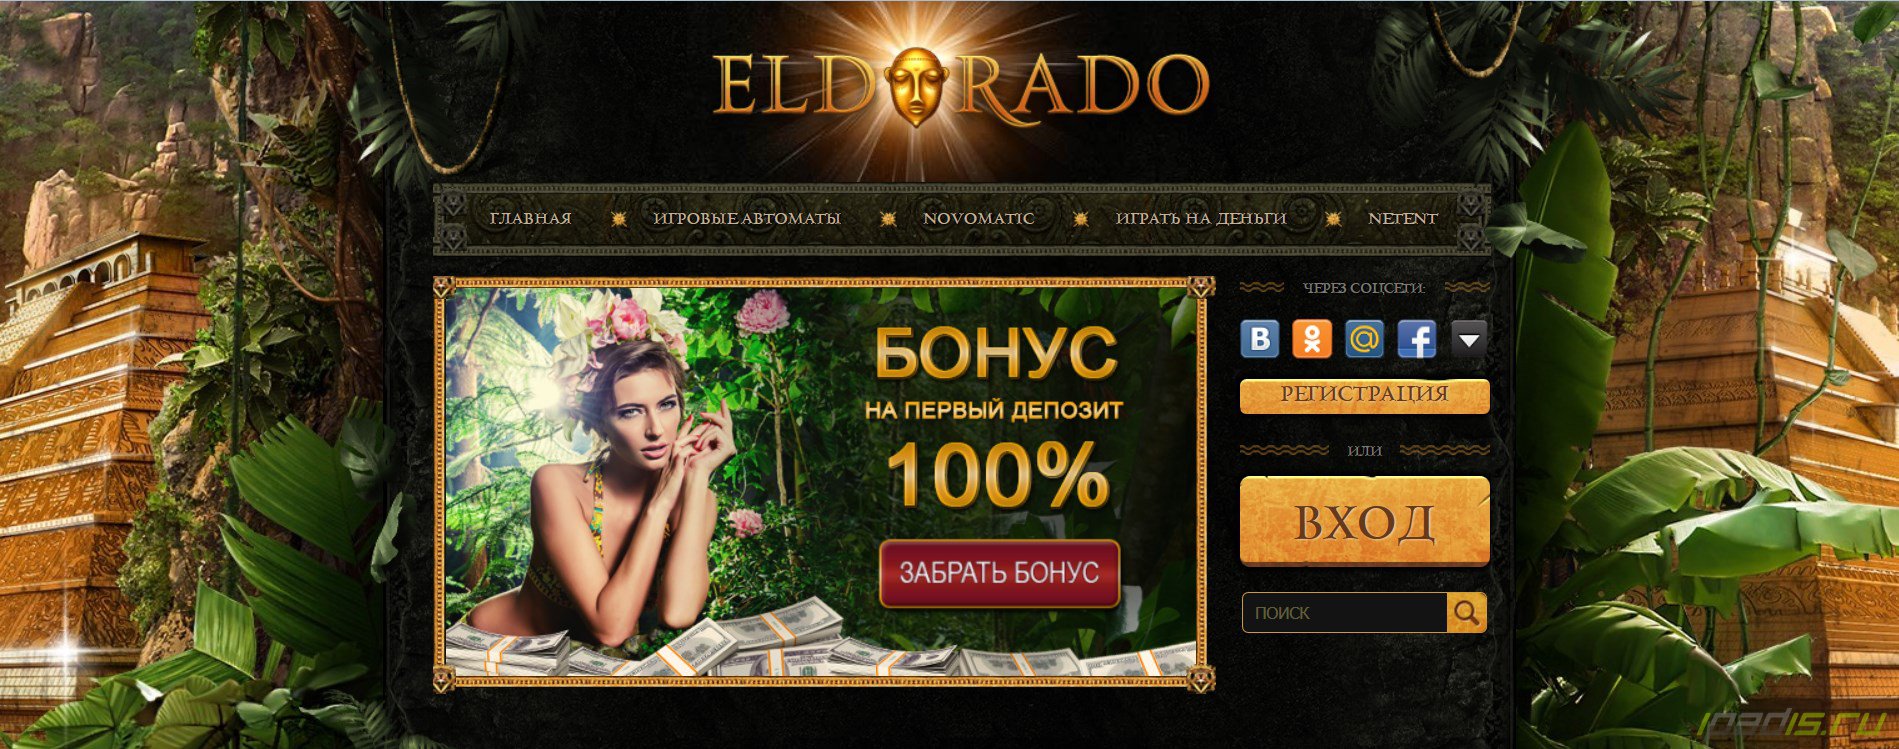 Эльдорадо клуб казино eldorado casino co установить казино вулкан на андроид casino vulcan info